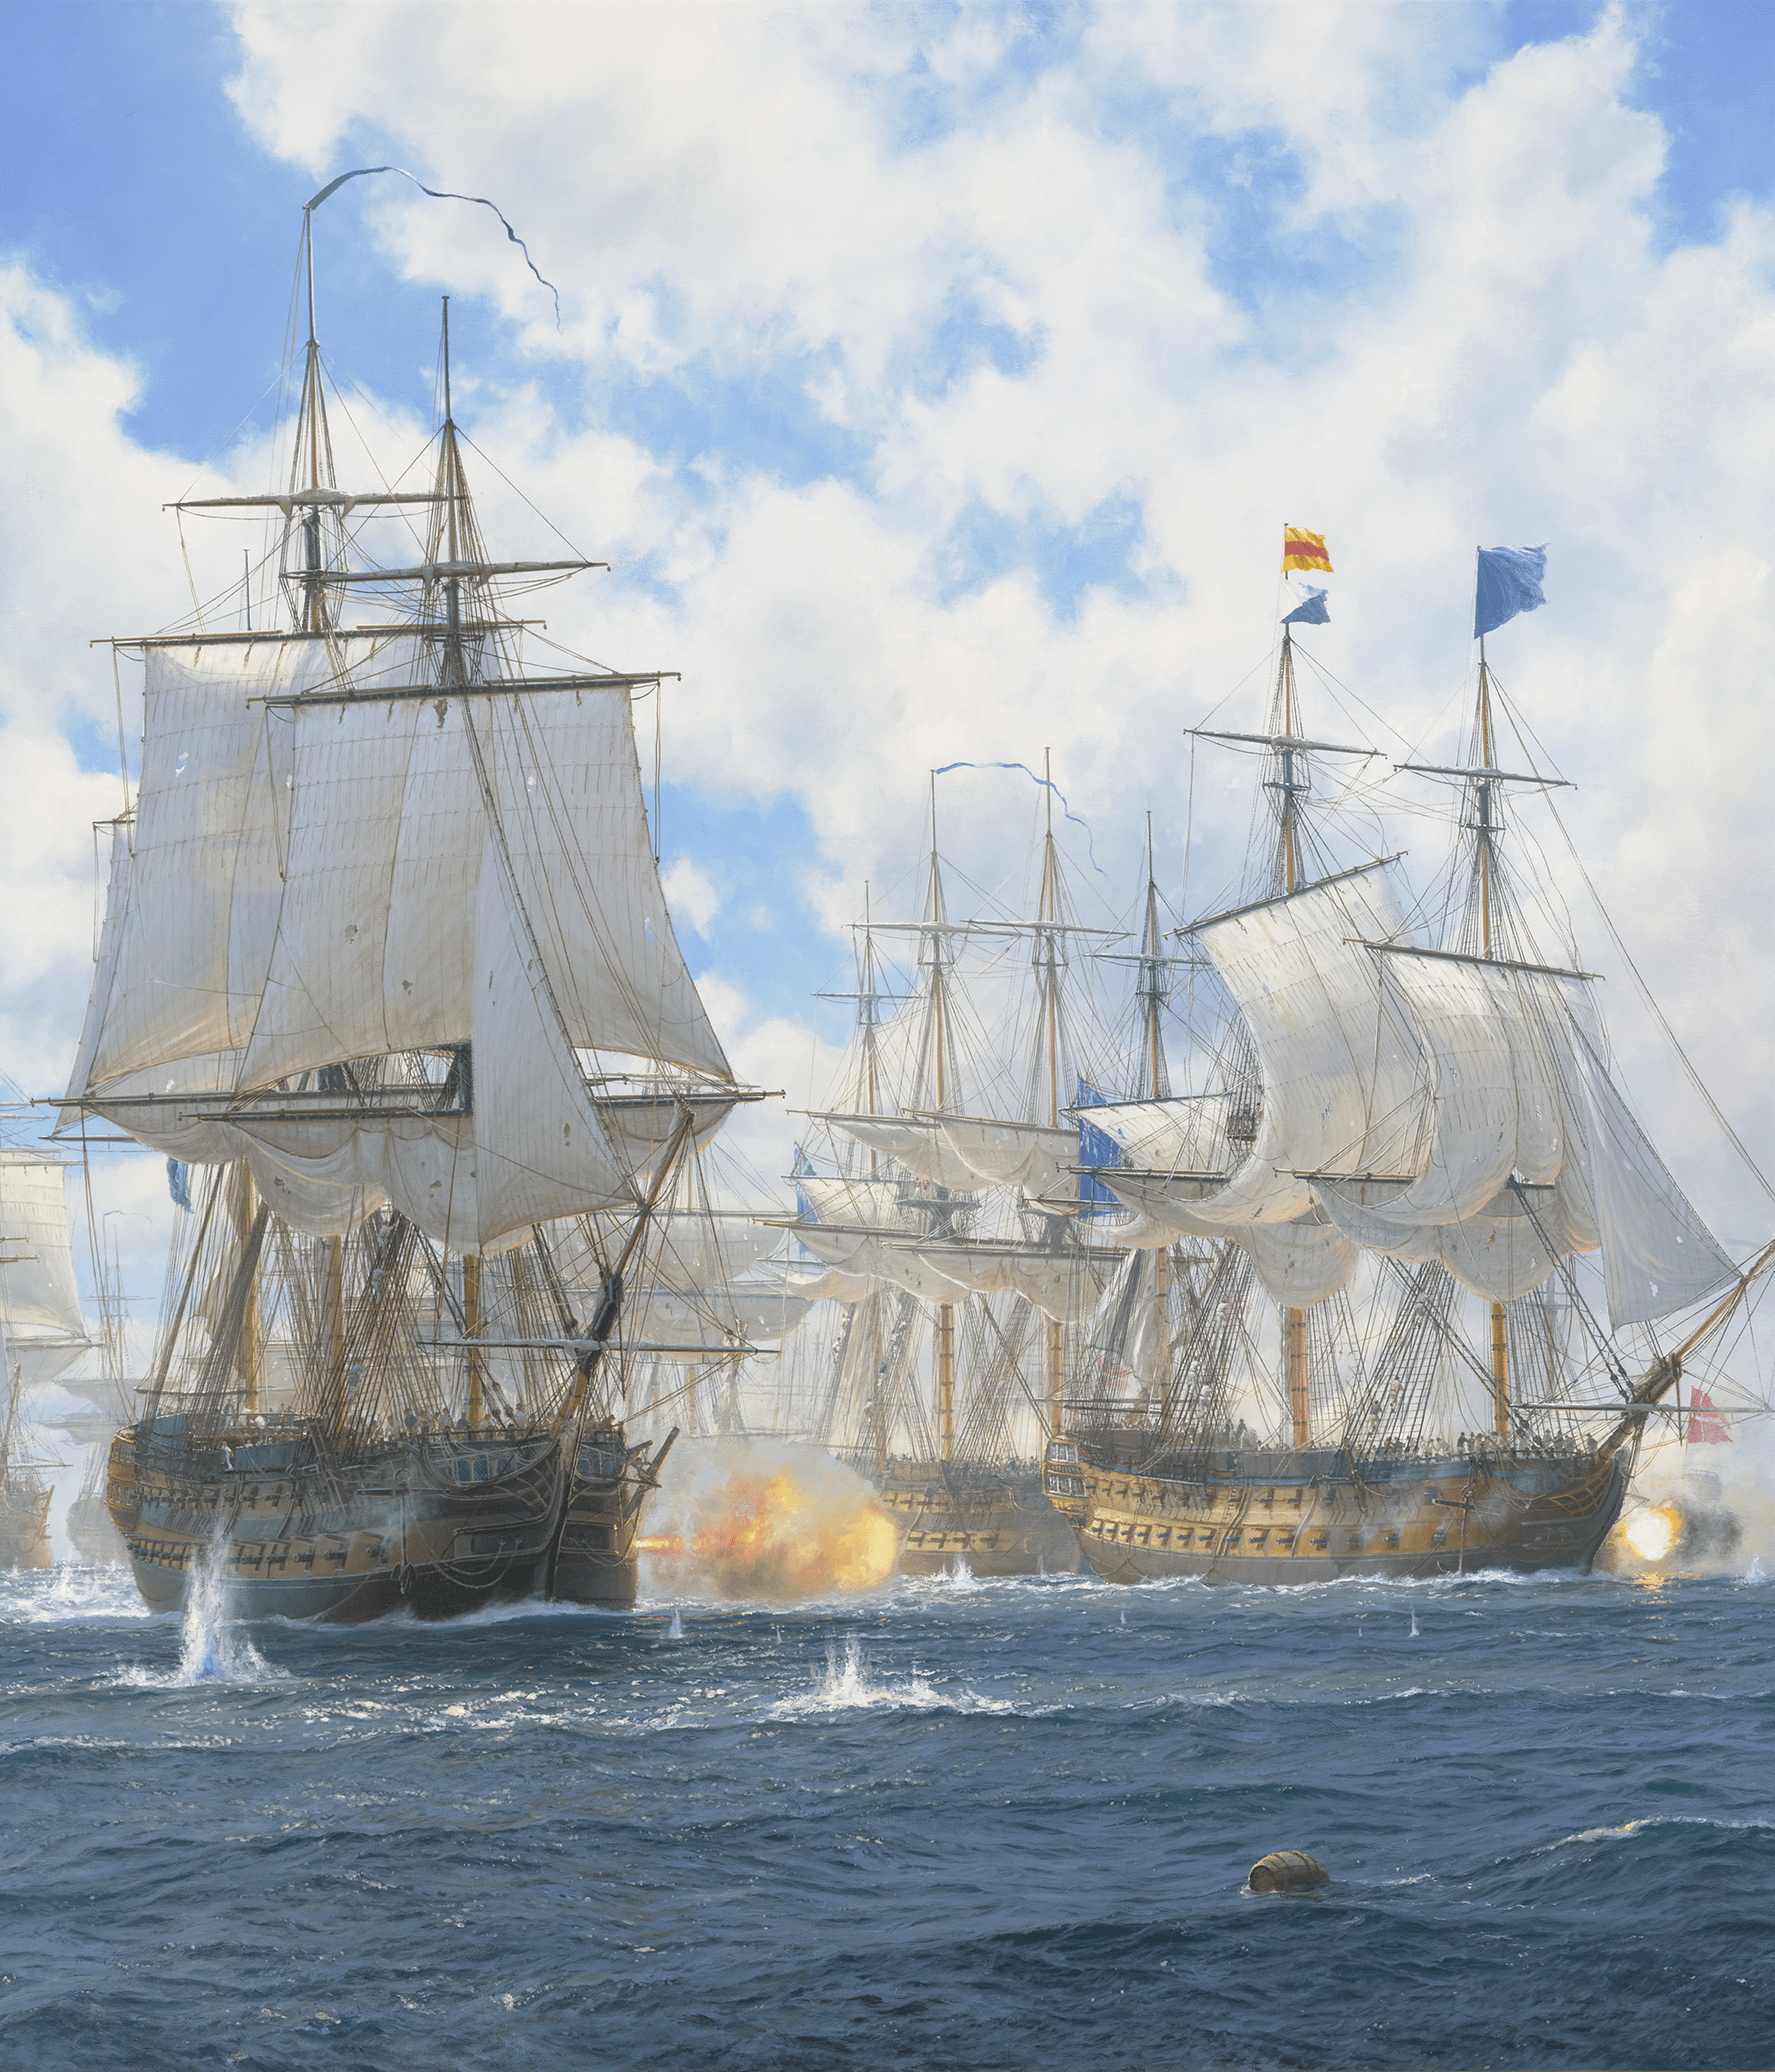 The Battle of Copenhagen by John Steven Dews